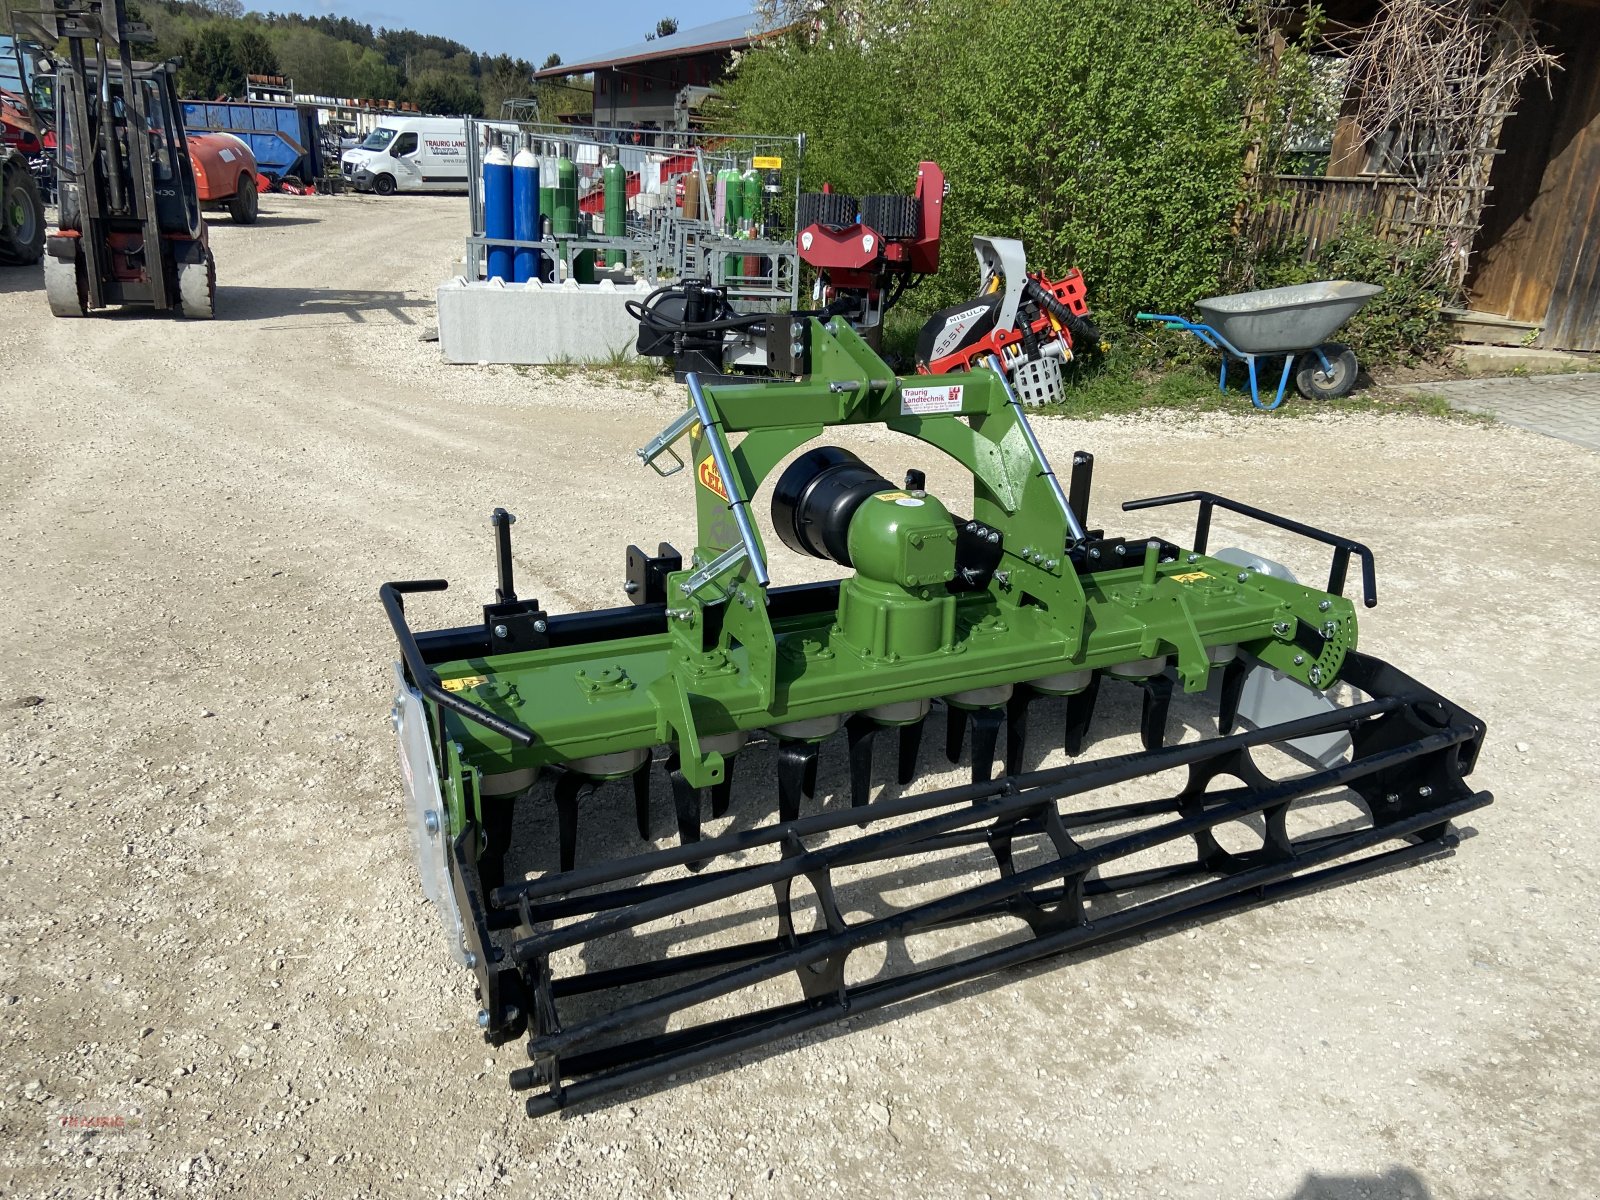 Kreiselegge des Typs Celli Ranger 225 mit Vorbaugrubber, Neumaschine in Mainburg/Wambach (Bild 4)